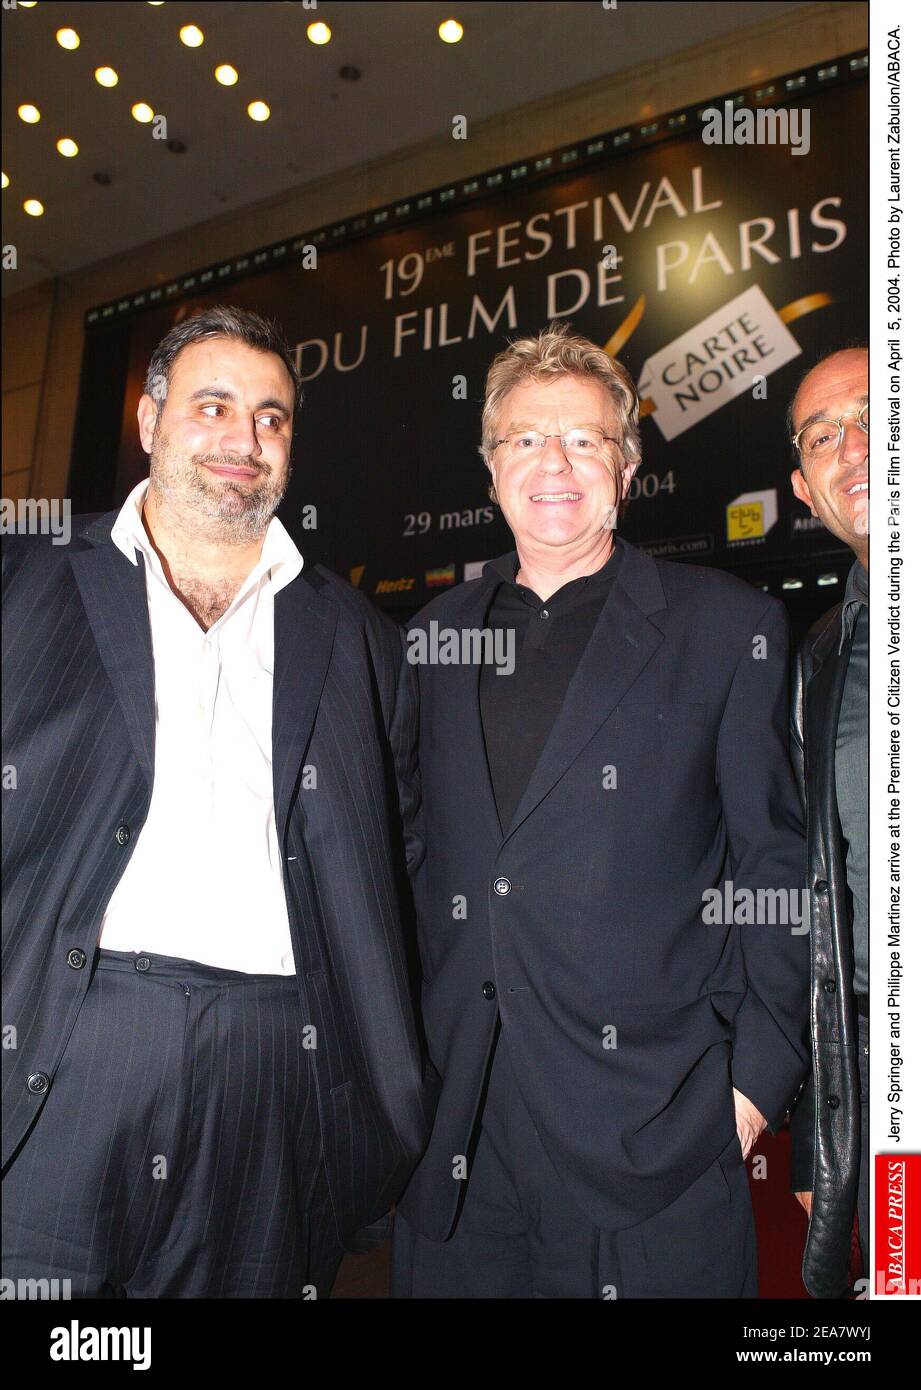 Jerry Springer et Philippe Martinez arrivent à la première du verdict du citoyen lors du Festival du film de Paris le 5 avril 2004. Photo de Laurent Zabulon/ABACA. Banque D'Images